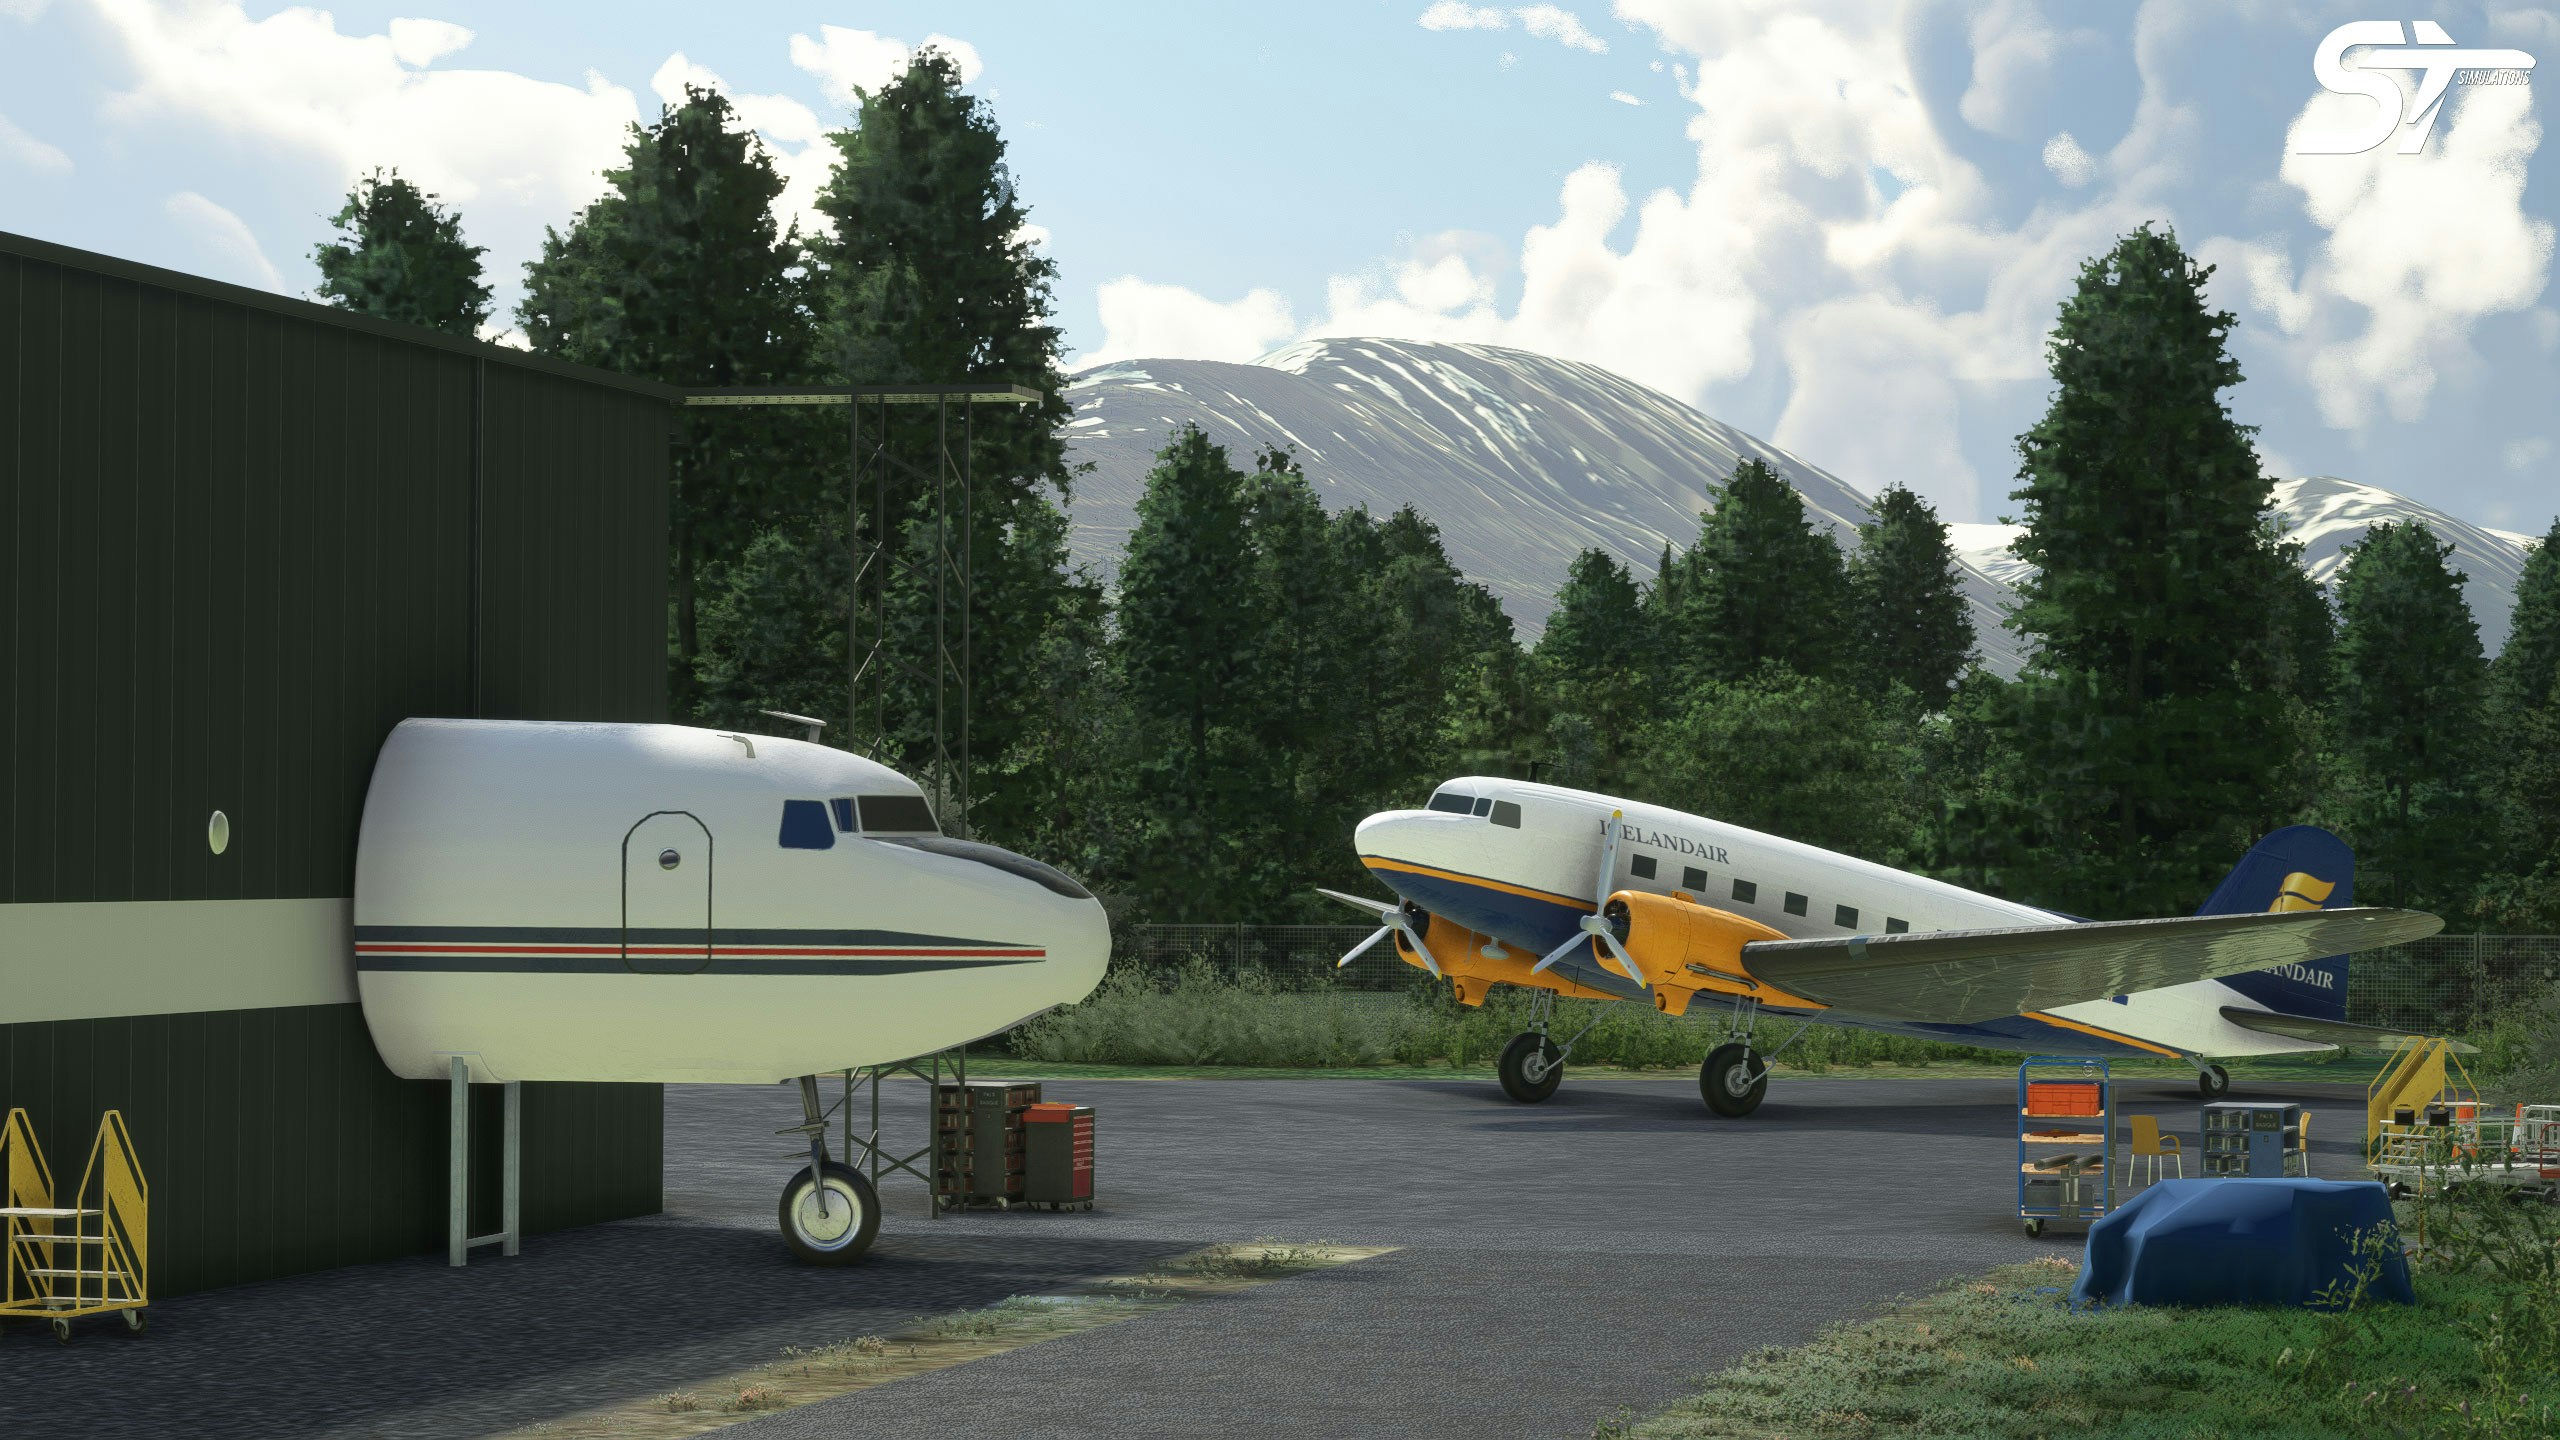 ST Simulations Releases BIAR Akureyri Airport